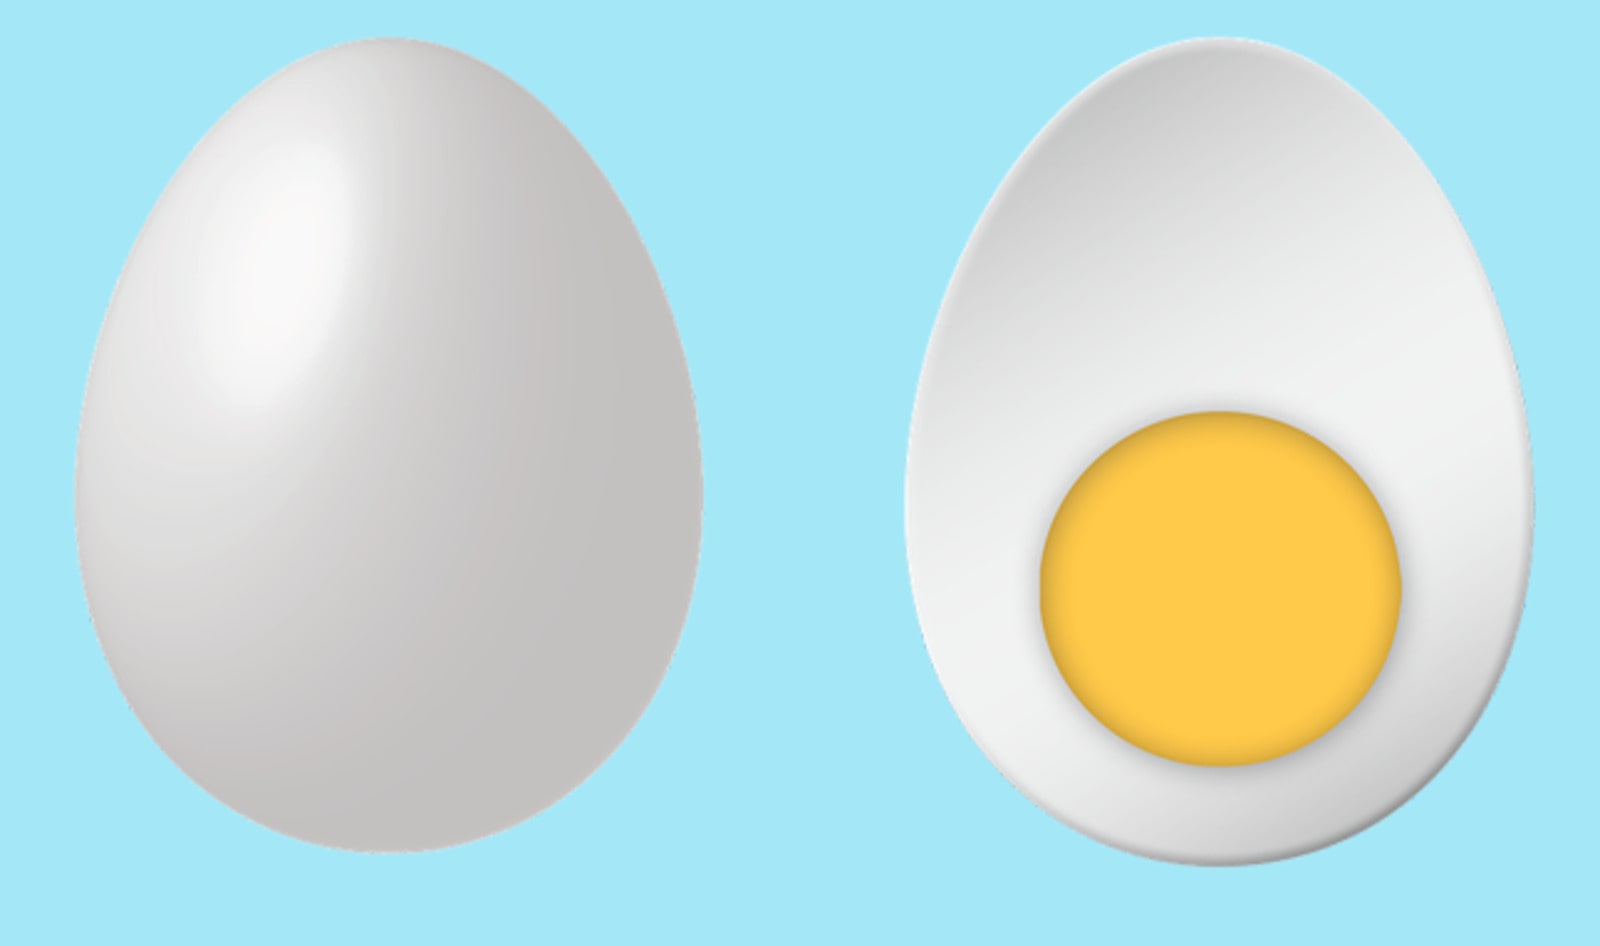 UK Brand Develops Vegan Egg to Avoid Getting “Left Behind”